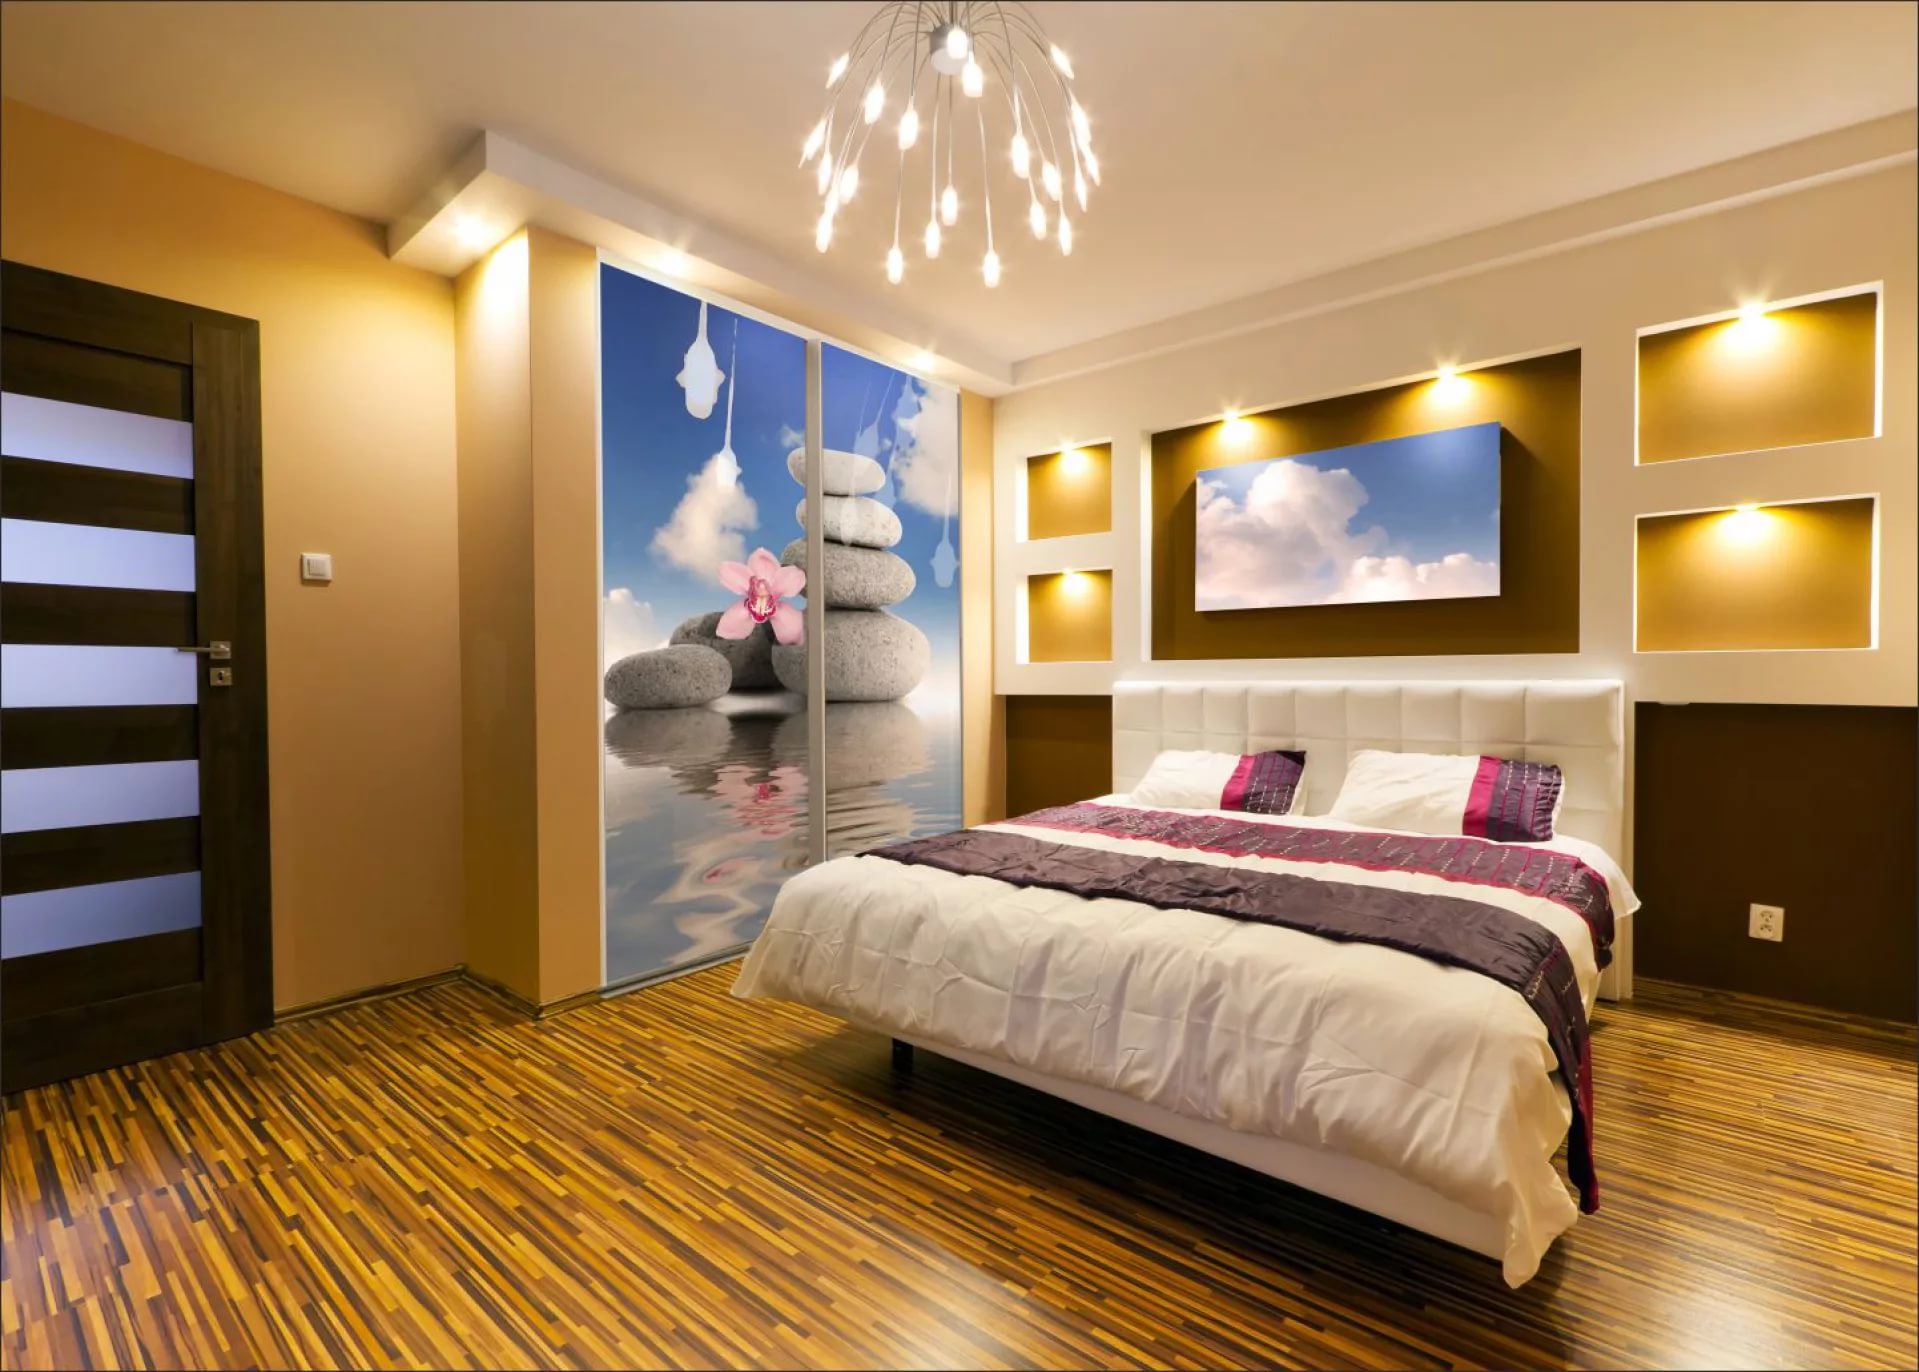 sadrokartónové výklenok v spálni foto dekor